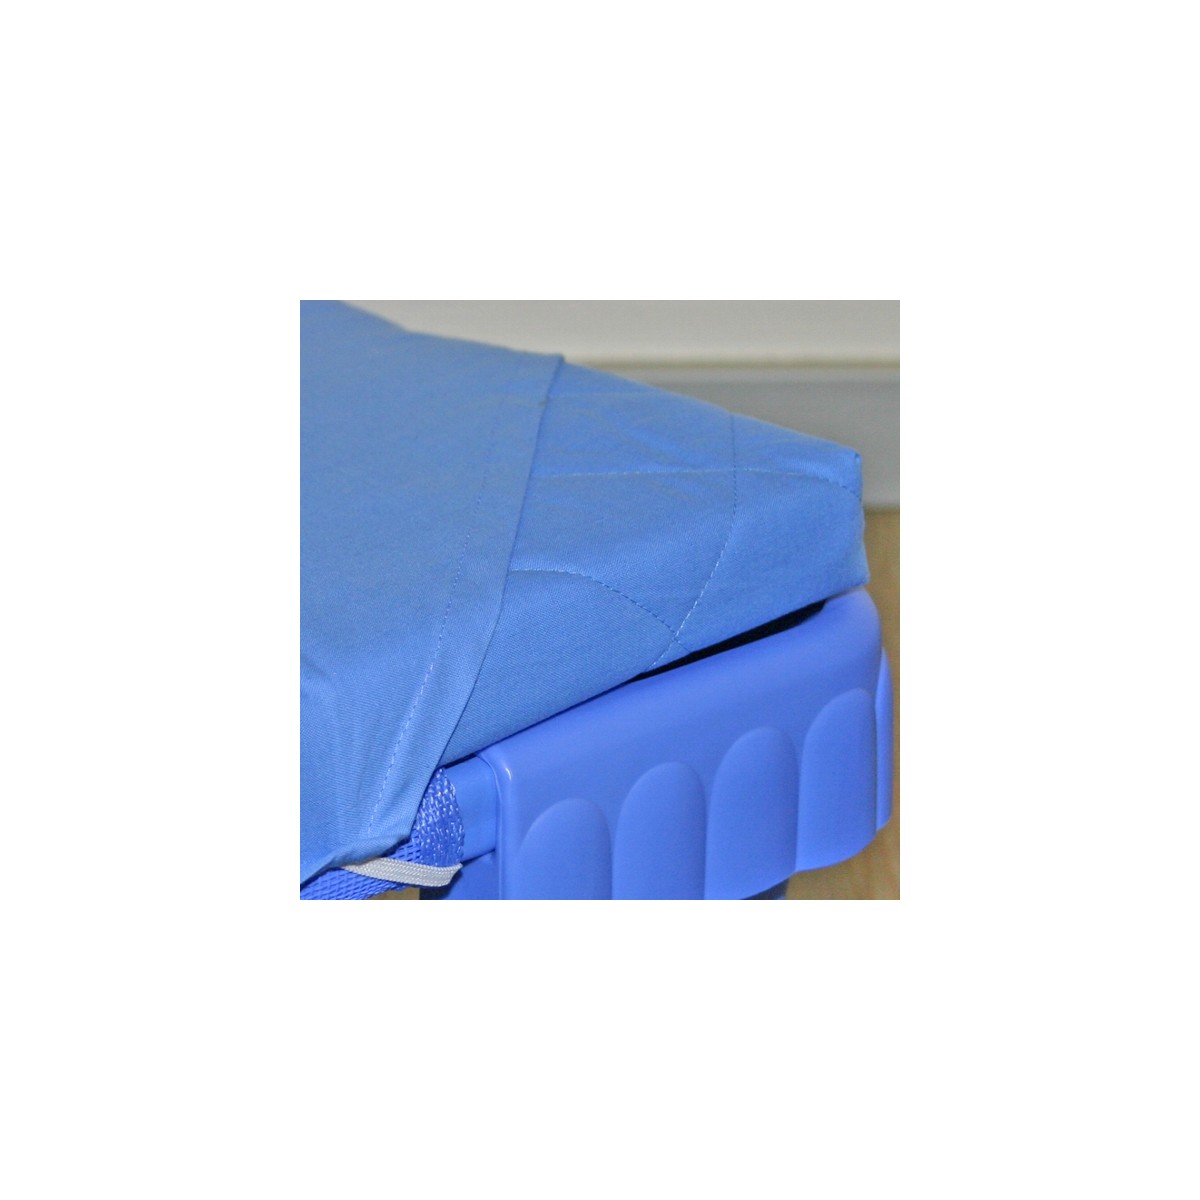 Cotton stretch sheets - Color: blue - Dimensions: 160x58cm - 17,60